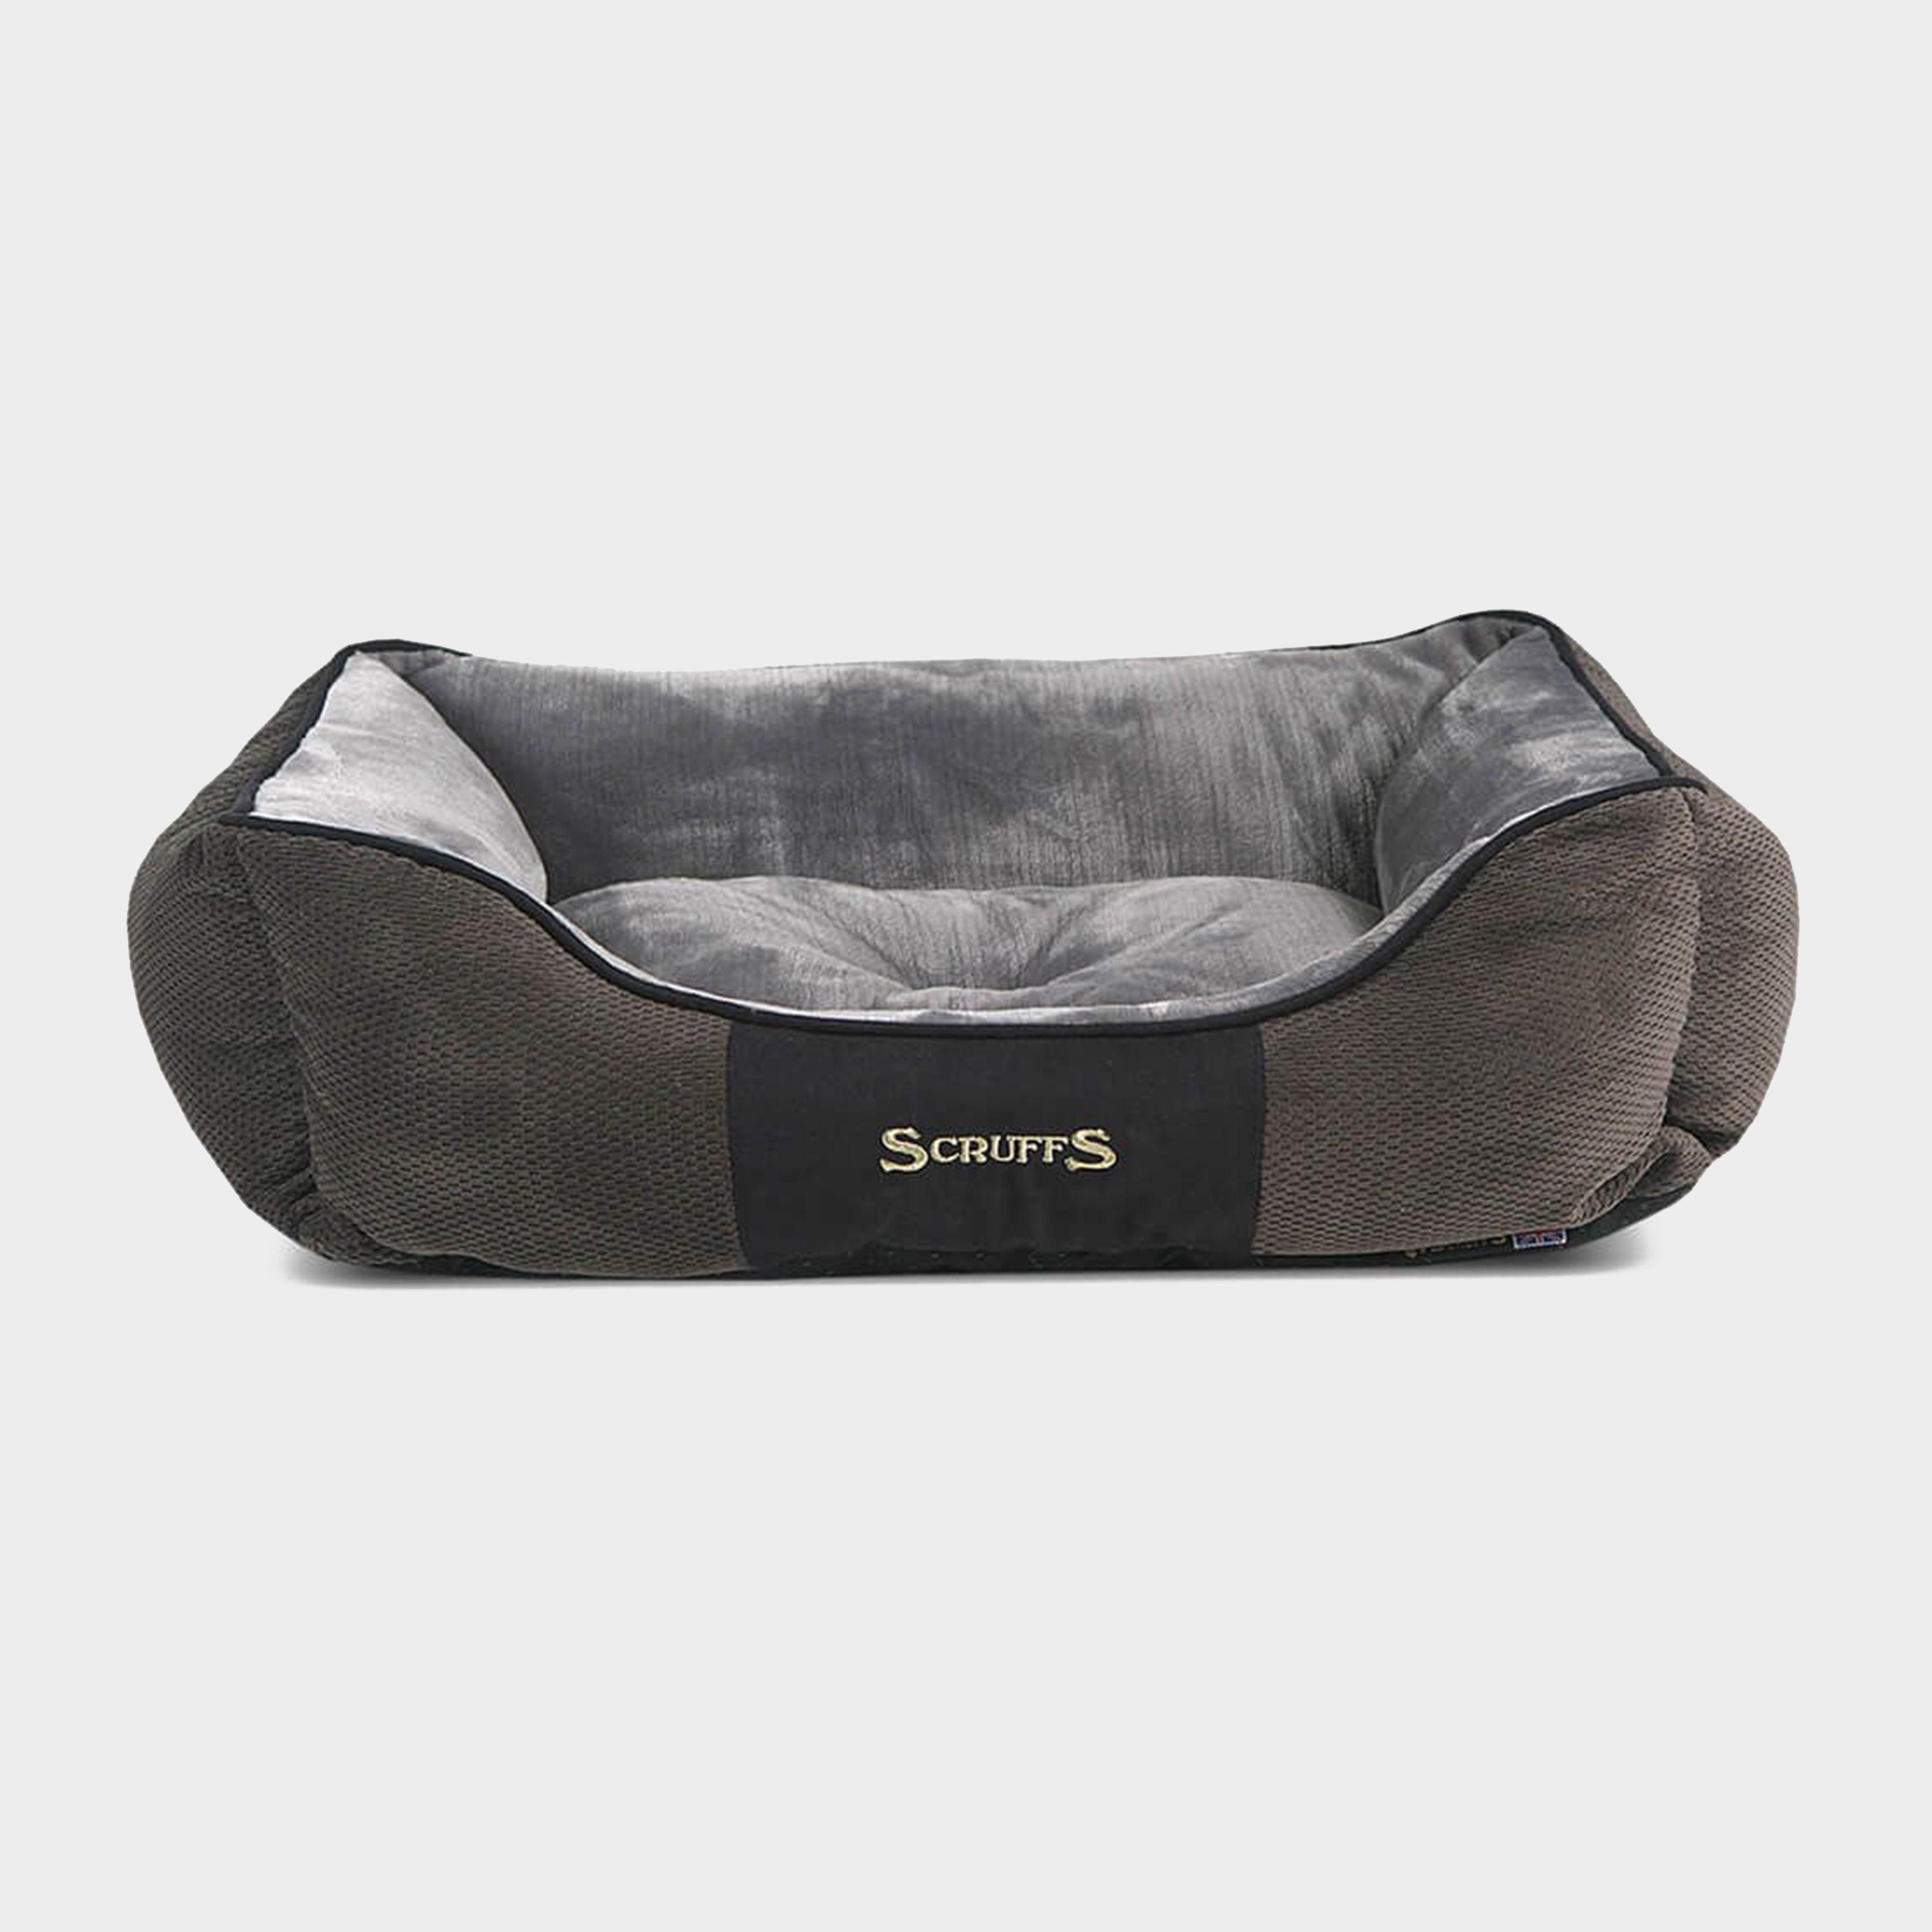 Scruffs Scruffs Chester Dog Bed Medium - Grey, GREY